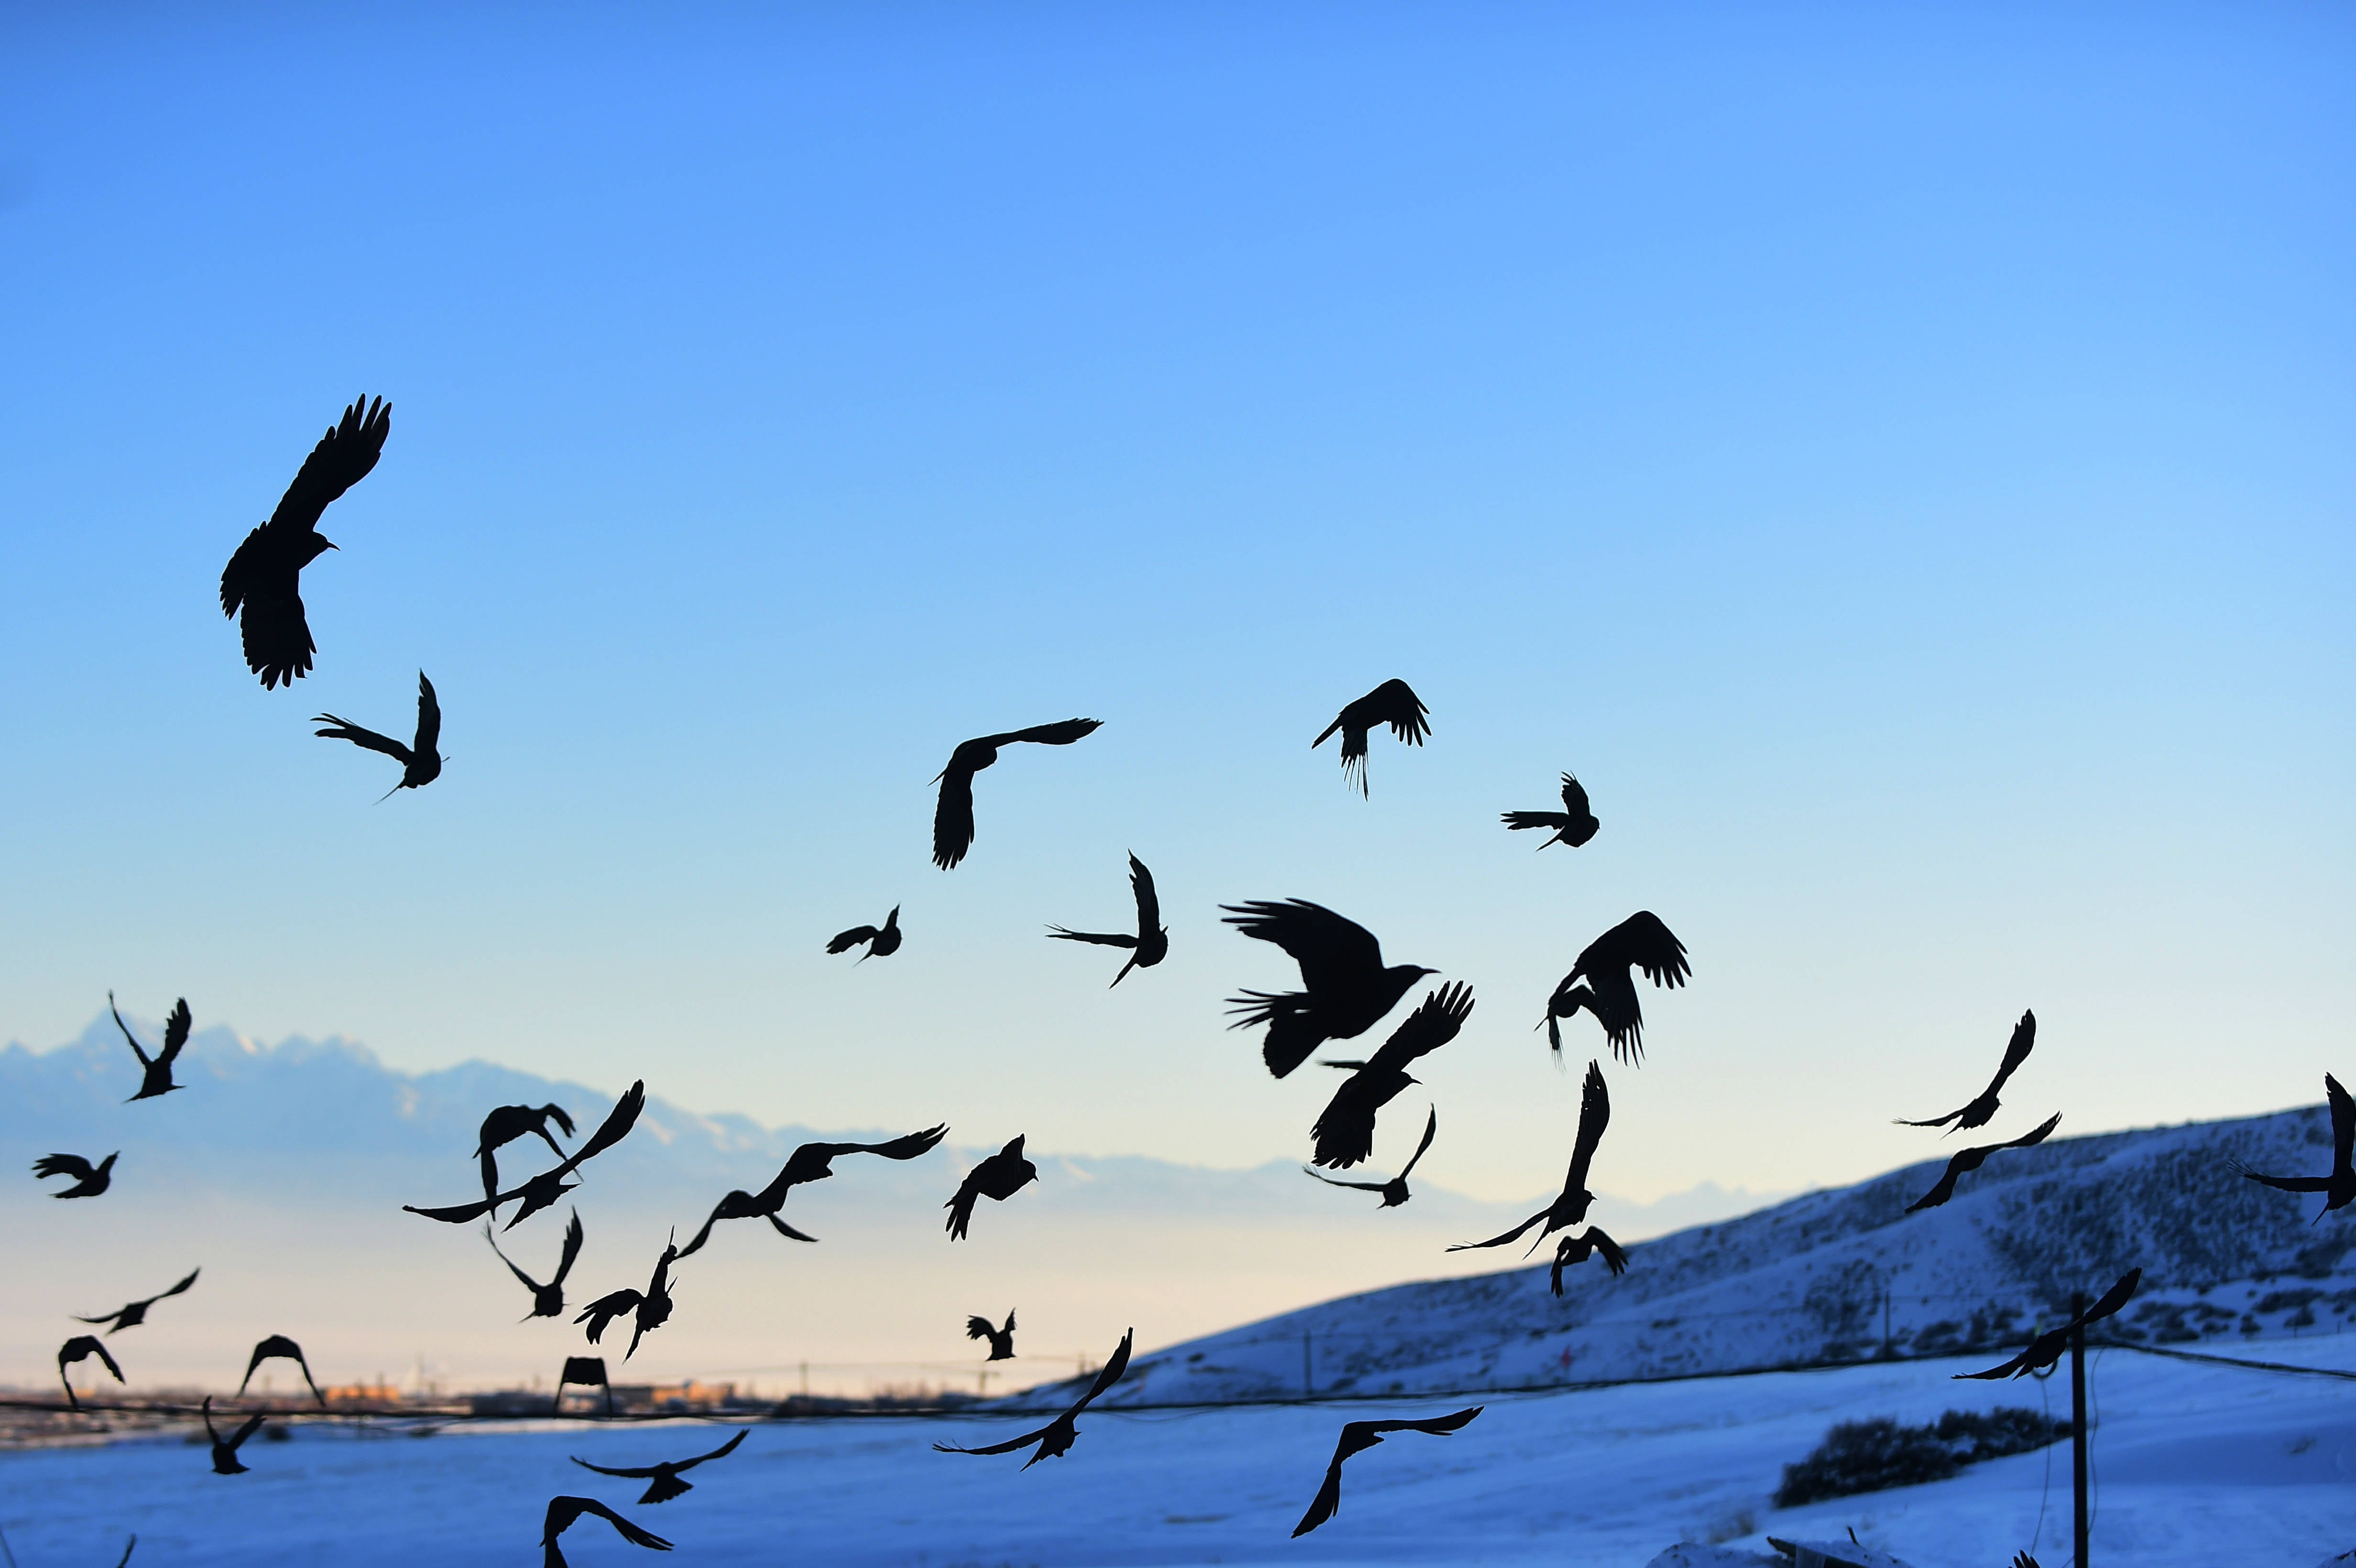 2016年1月22日,在乌鲁木齐市南山丝绸之路滑雪场附近,一群乌鸦在空中